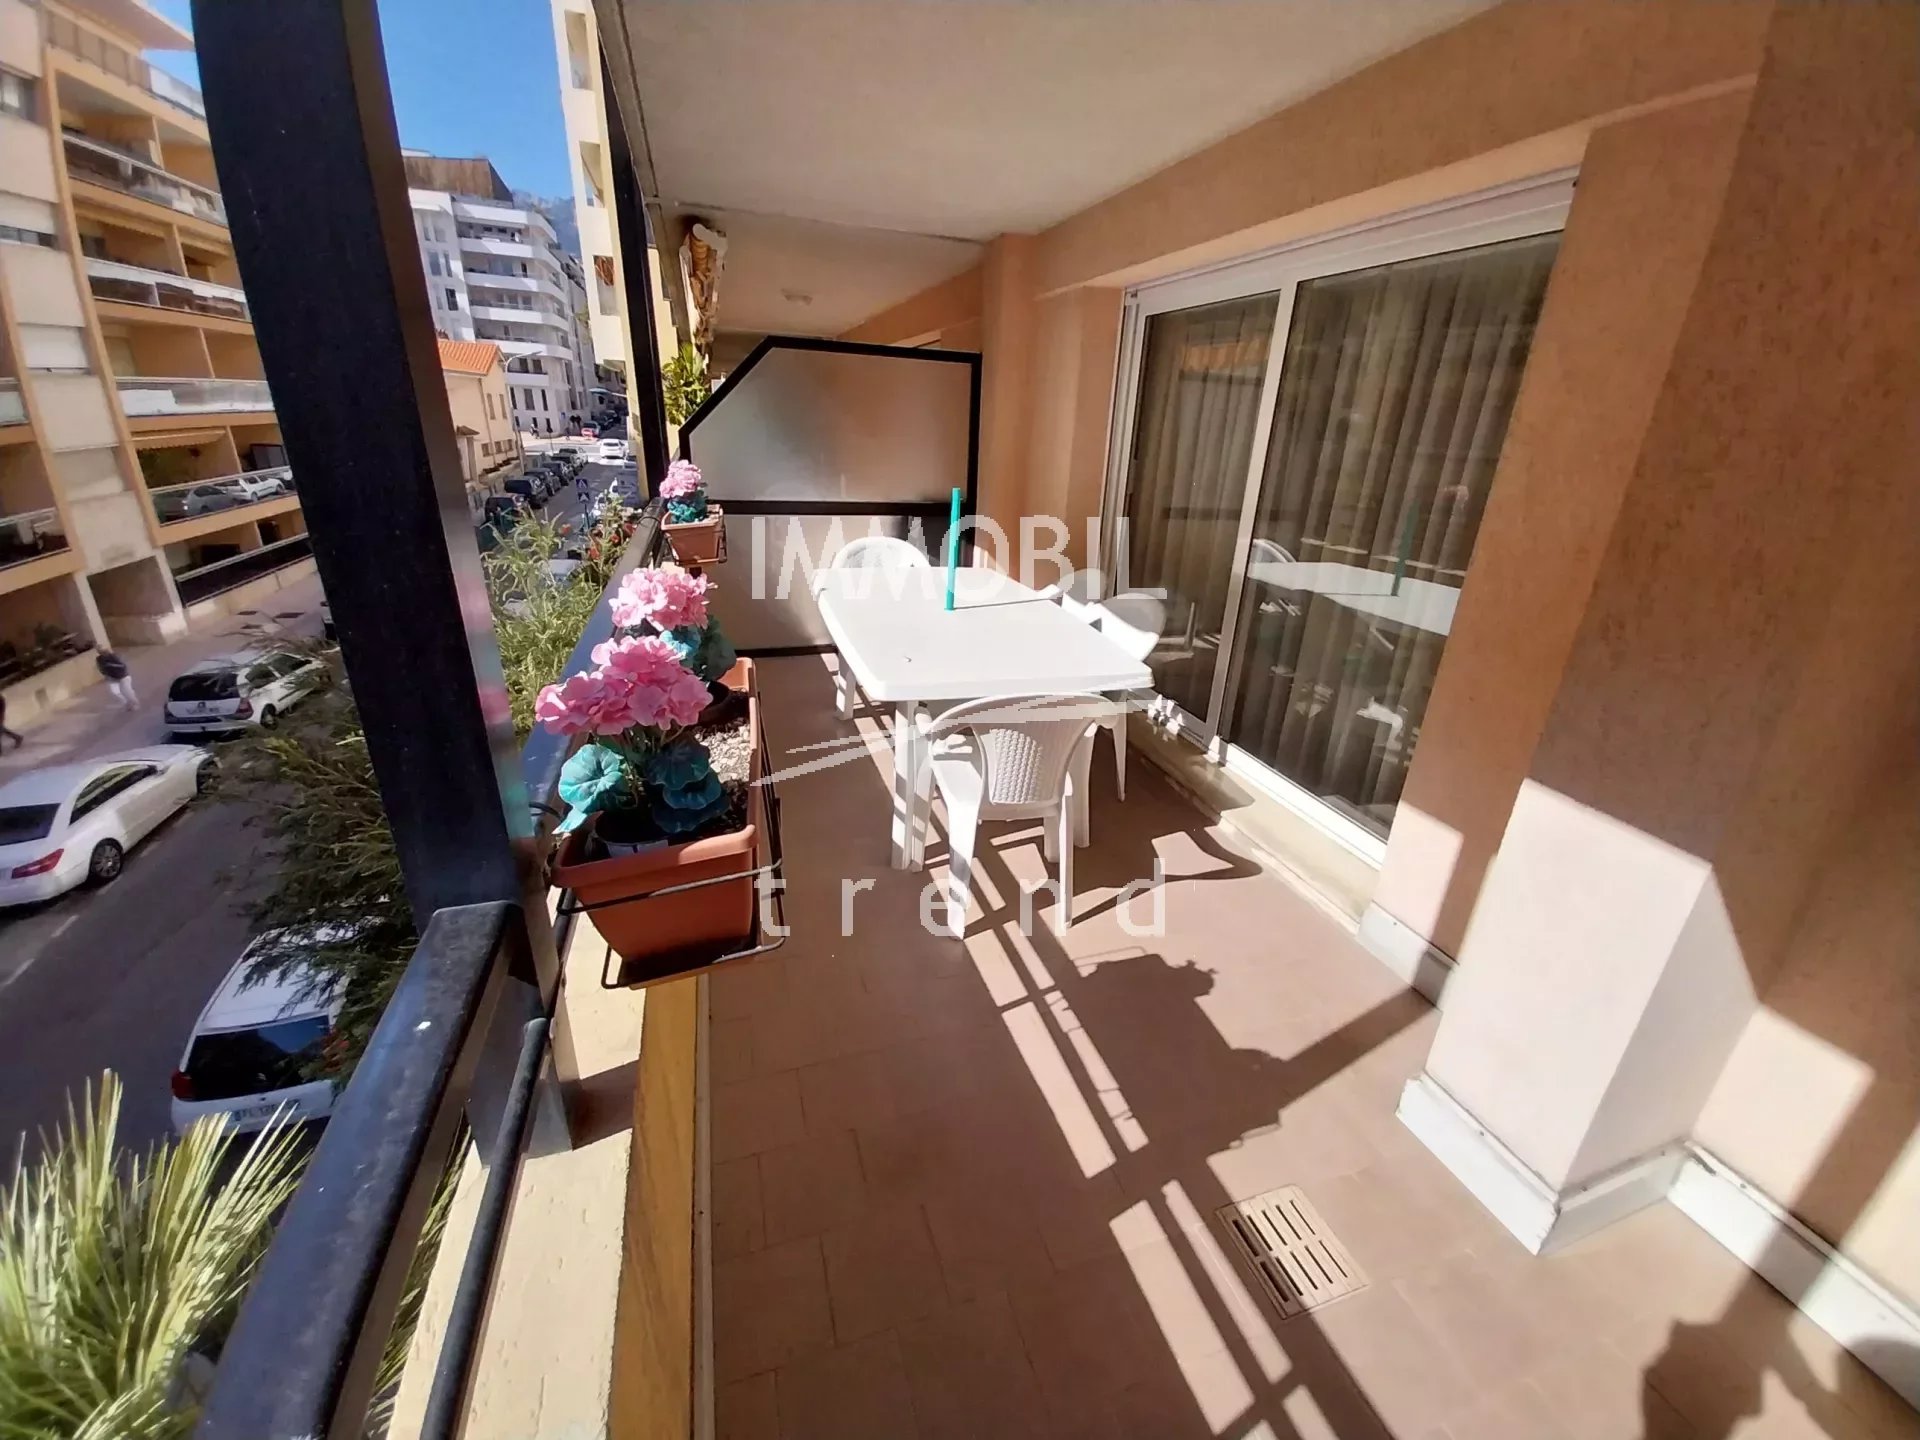 ESCLUSIVA - MENTONE COURS DU CENTENAIRE - Ampio trilocale con terrazza, balcone e doppia esposizione EST-OVEST